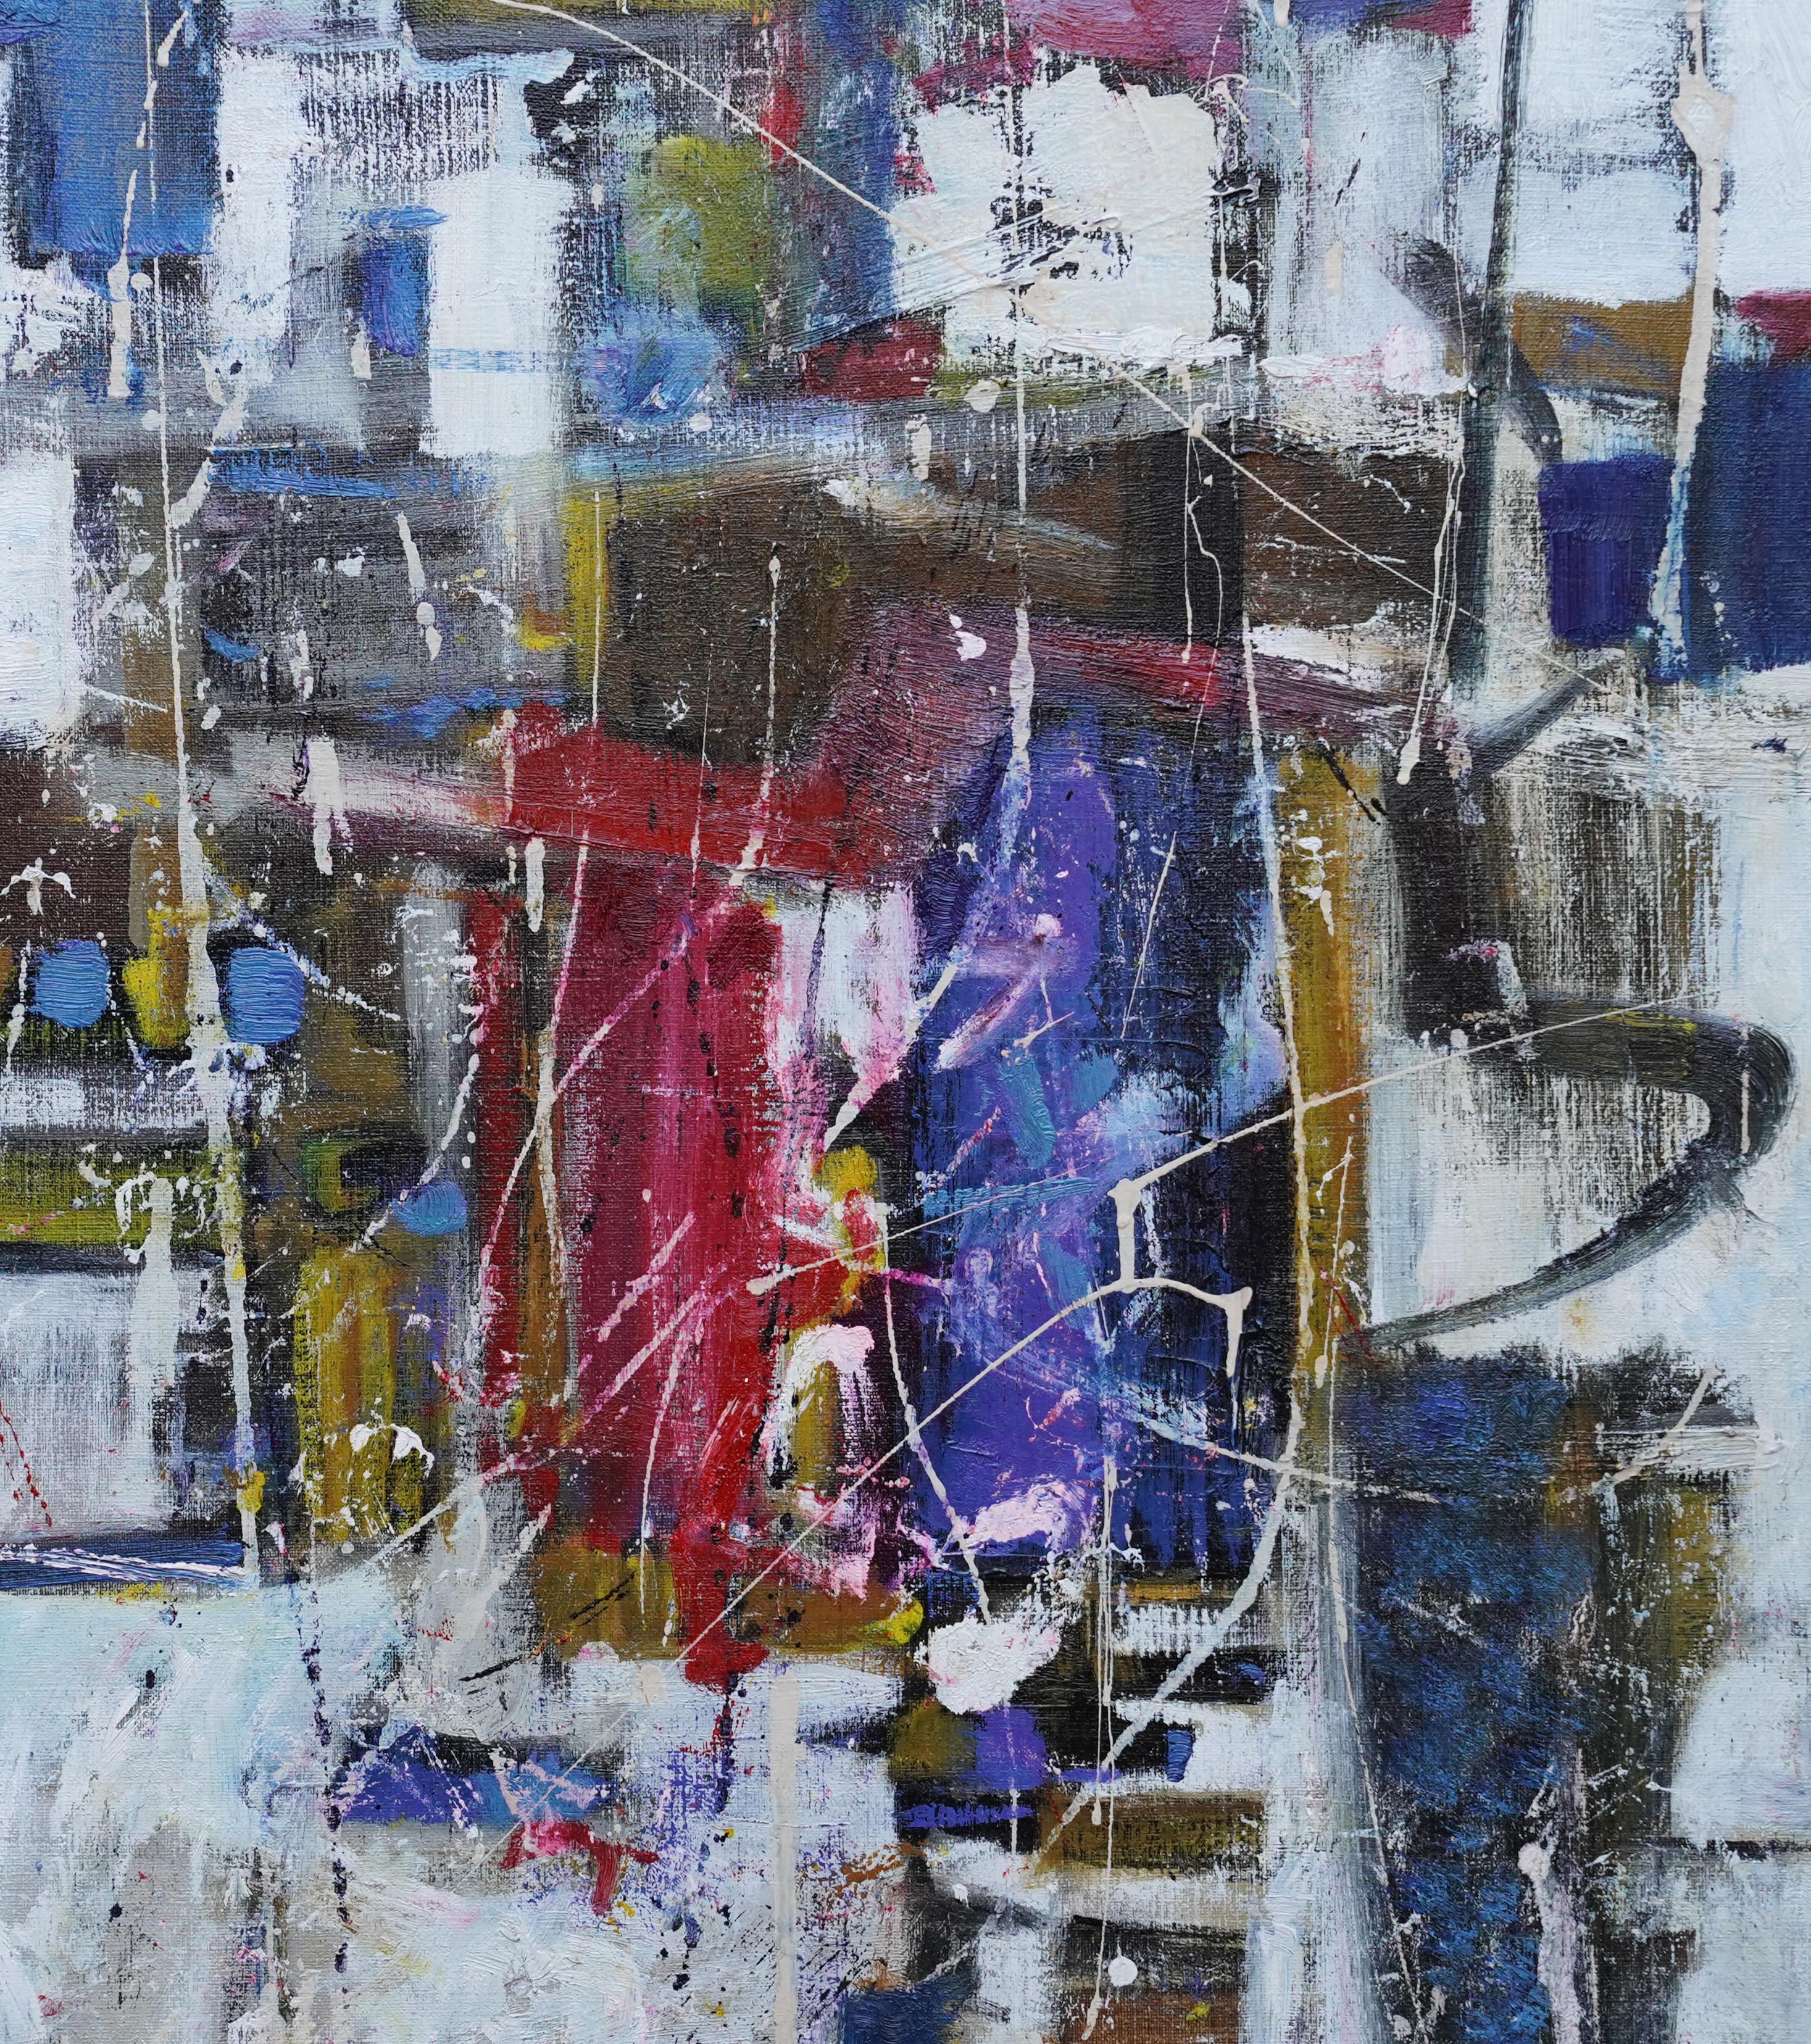 Cosmos - British Fifties Abstrakt-expressionistische Kunst Ölgemälde in Rot, Weiß und Blau (Abstrakter Expressionismus), Painting, von Bernard Kay